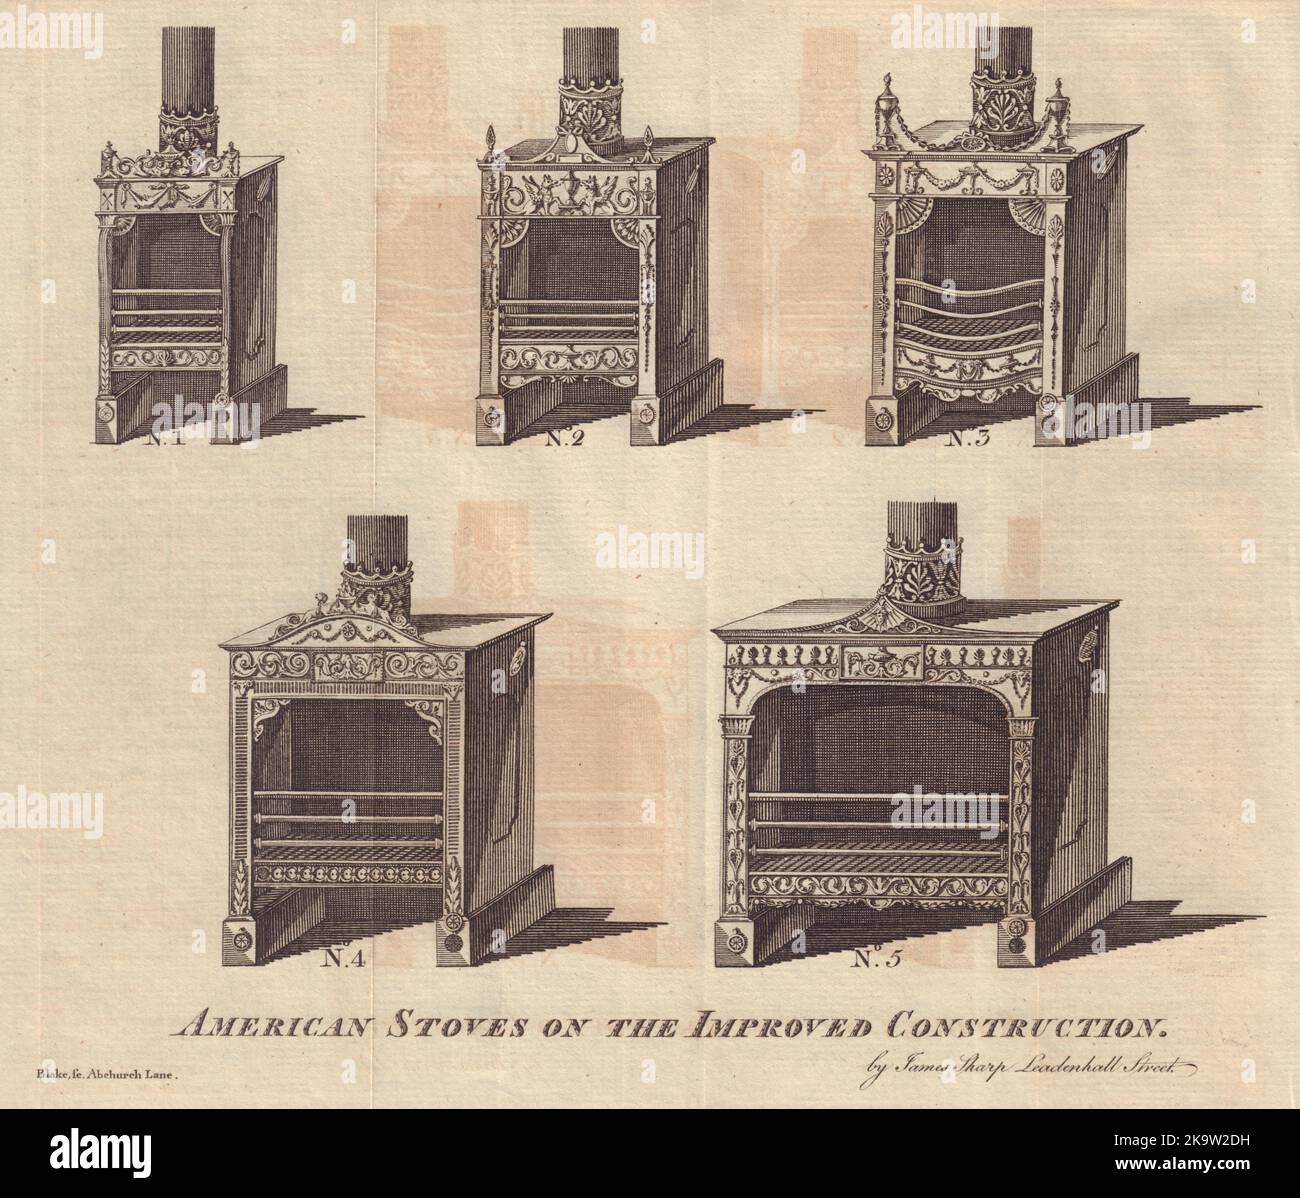 Poêles américains sur la construction améliorée inventée par Franklin 1781 imprimé Banque D'Images